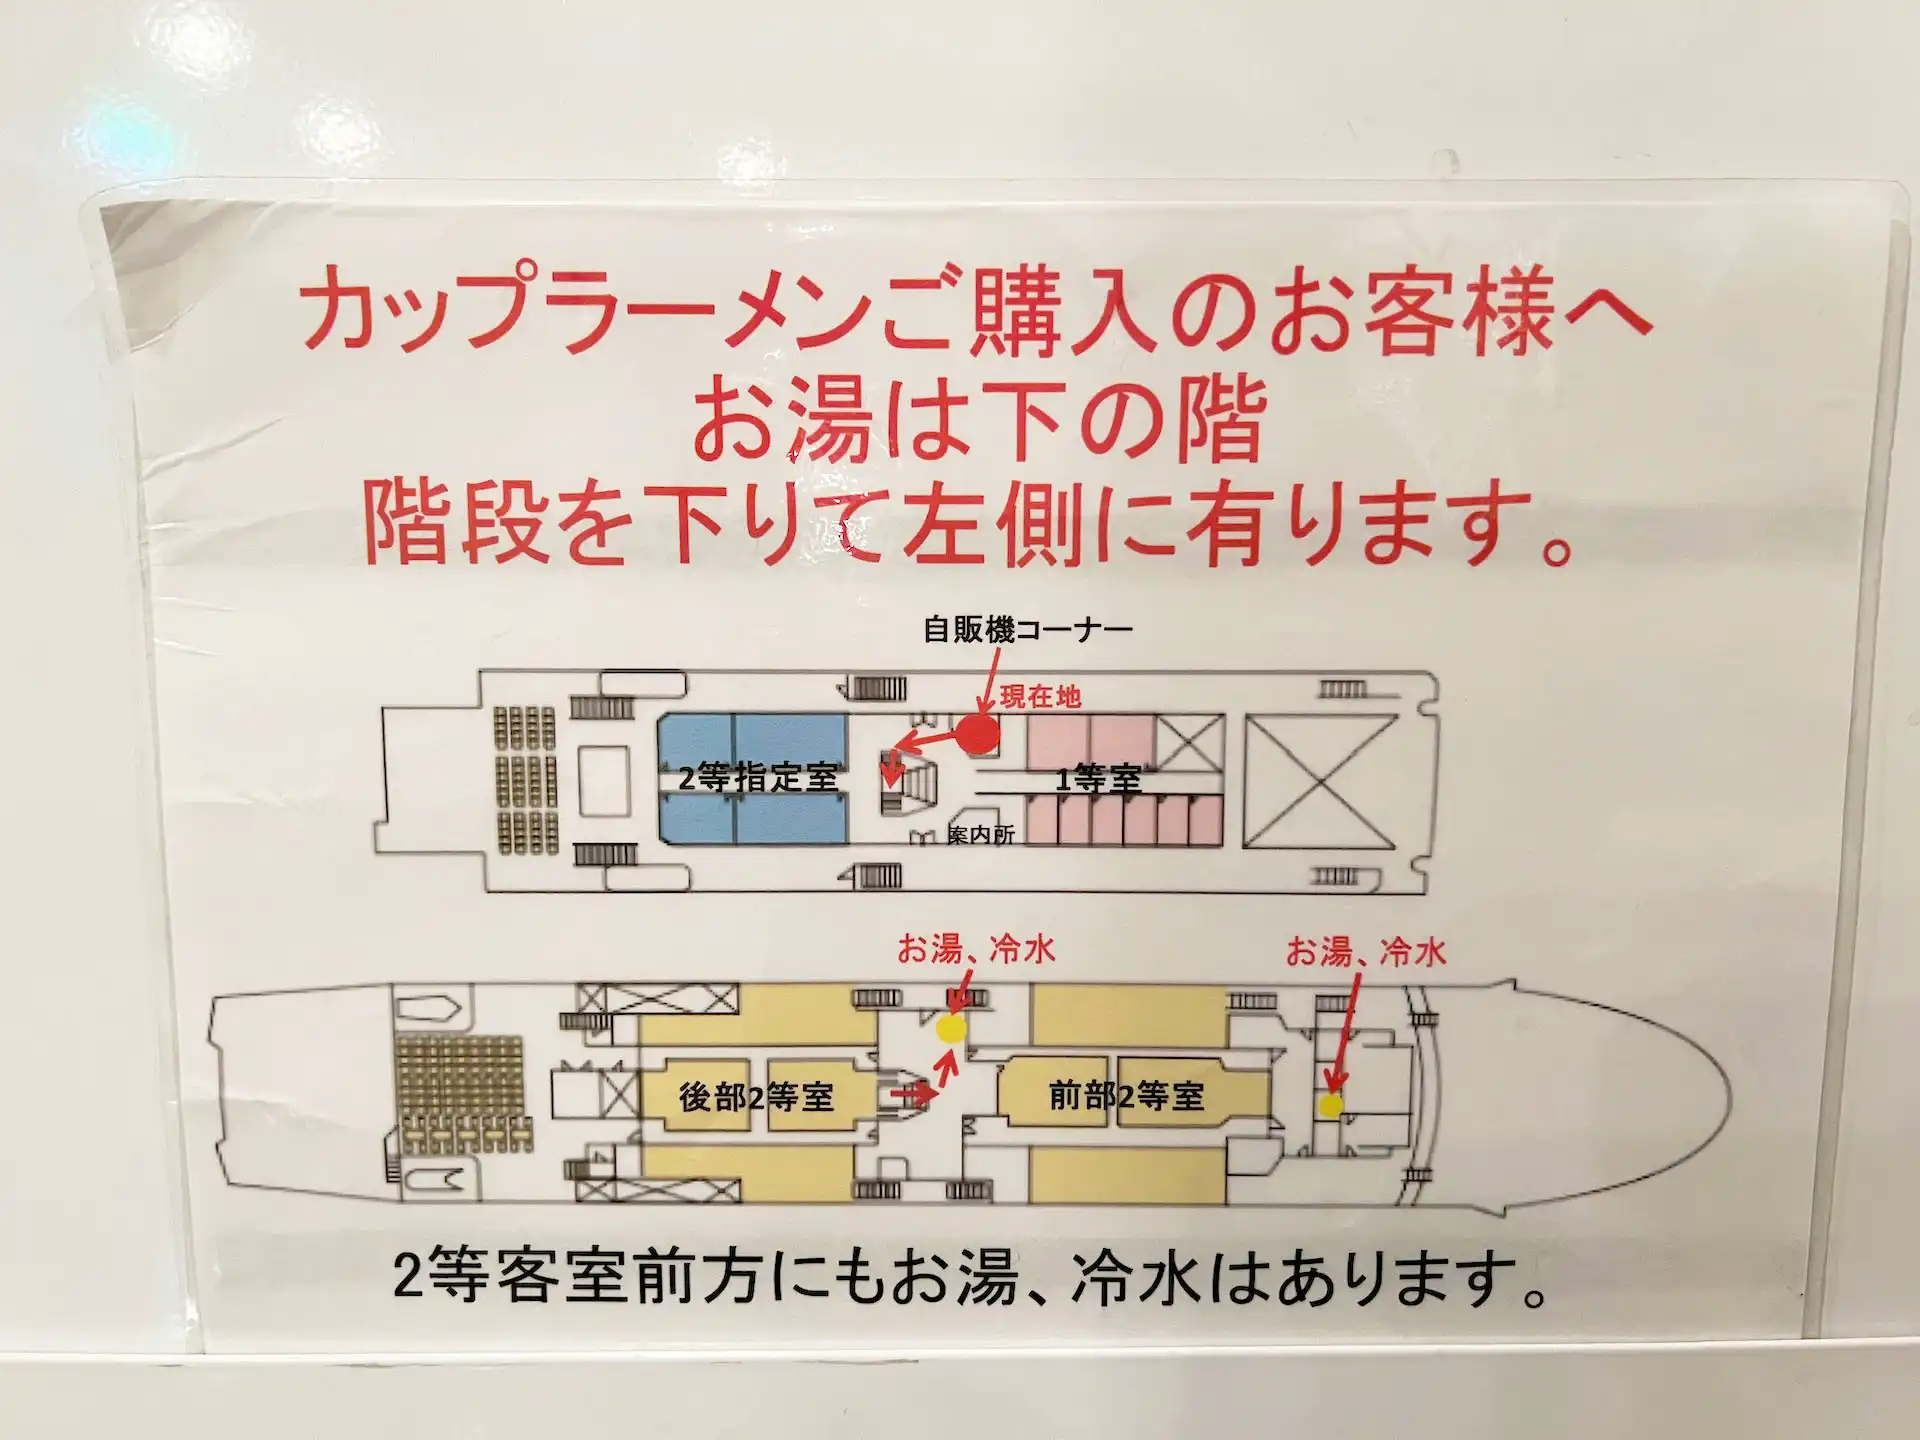 九州郵船フェリーちくし船内の給湯器の場所が書かれた地図